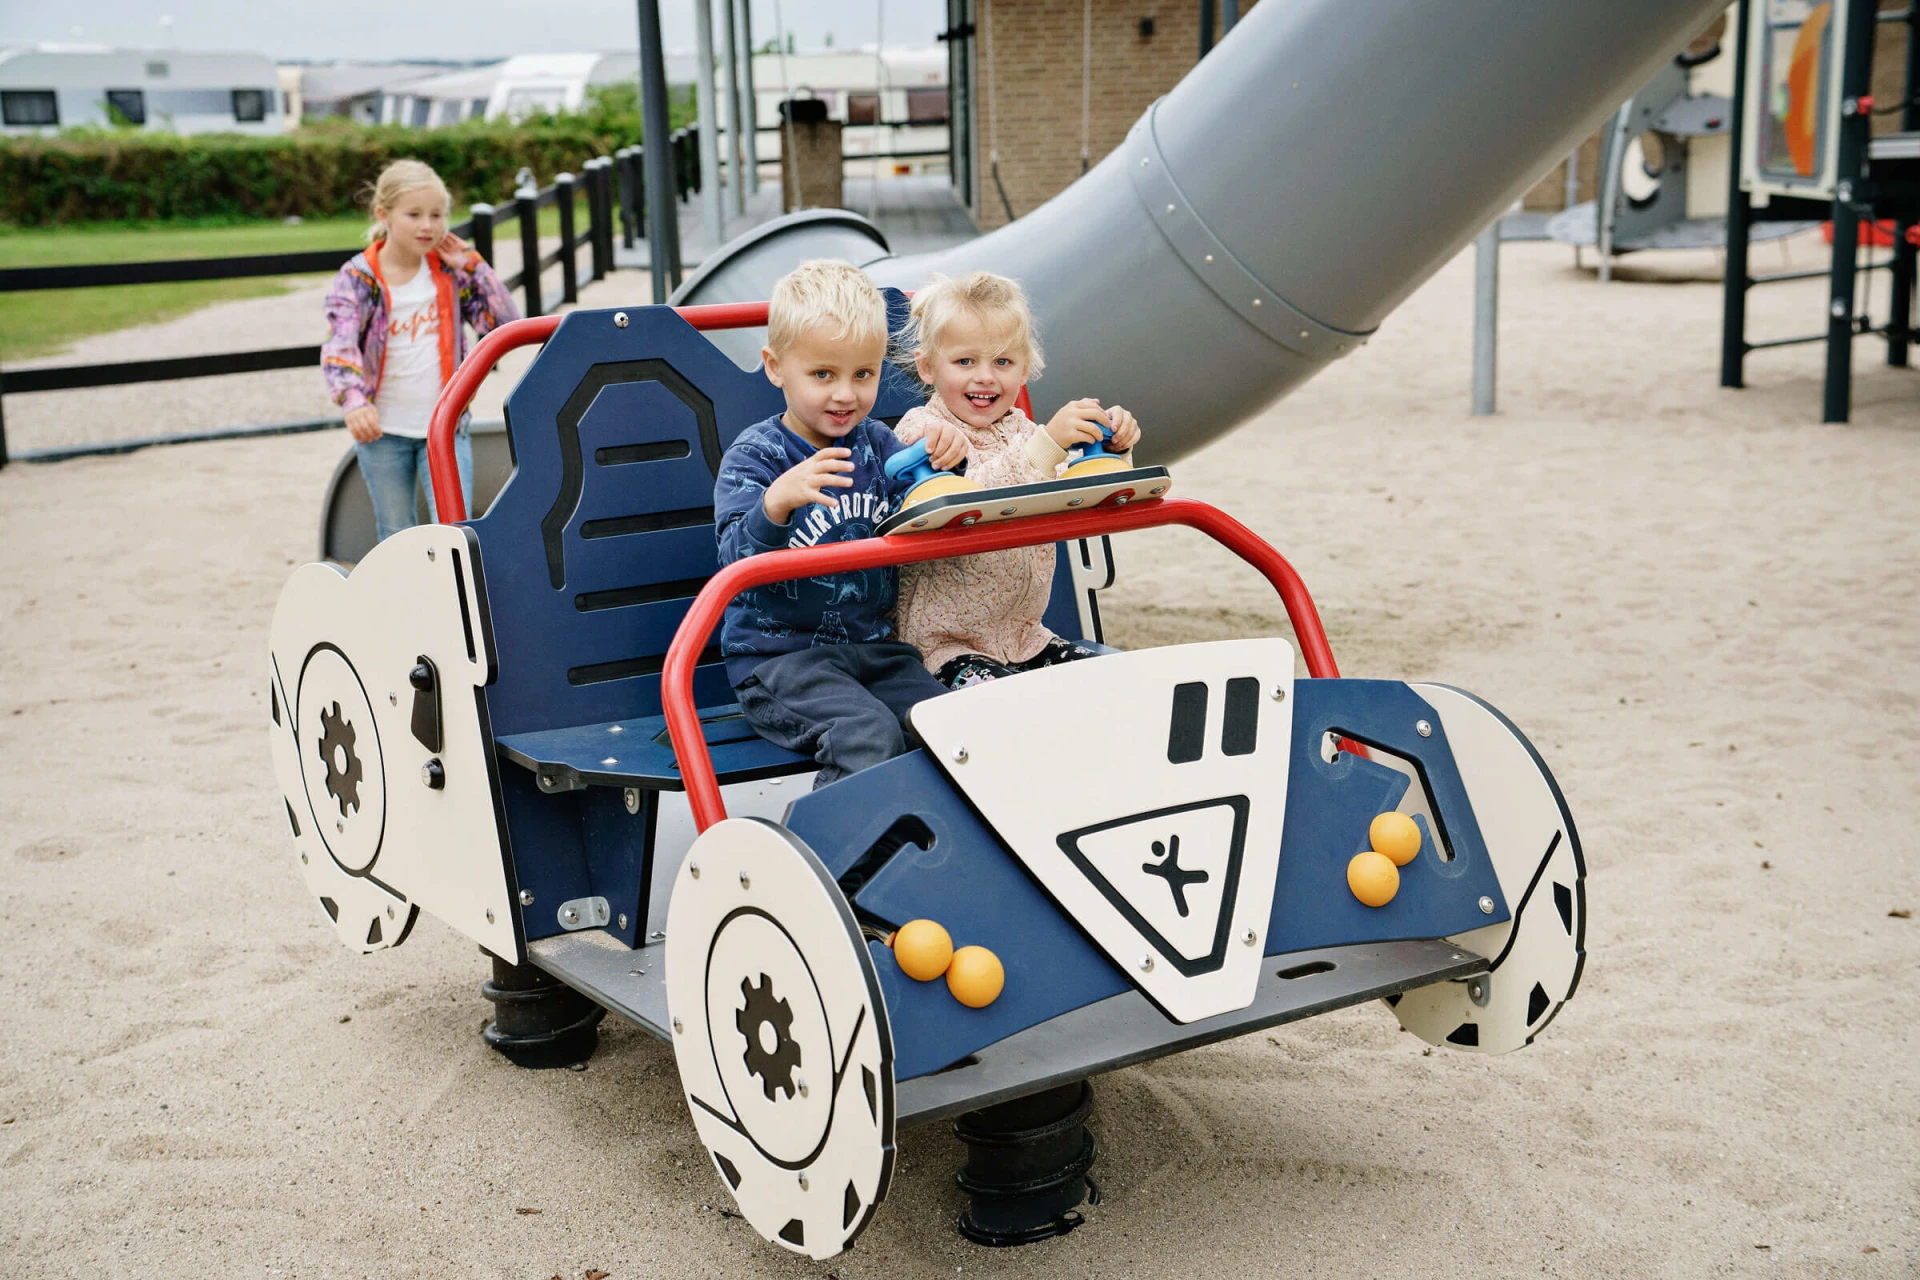 niños jugando en un parque infantil tematizado con coches